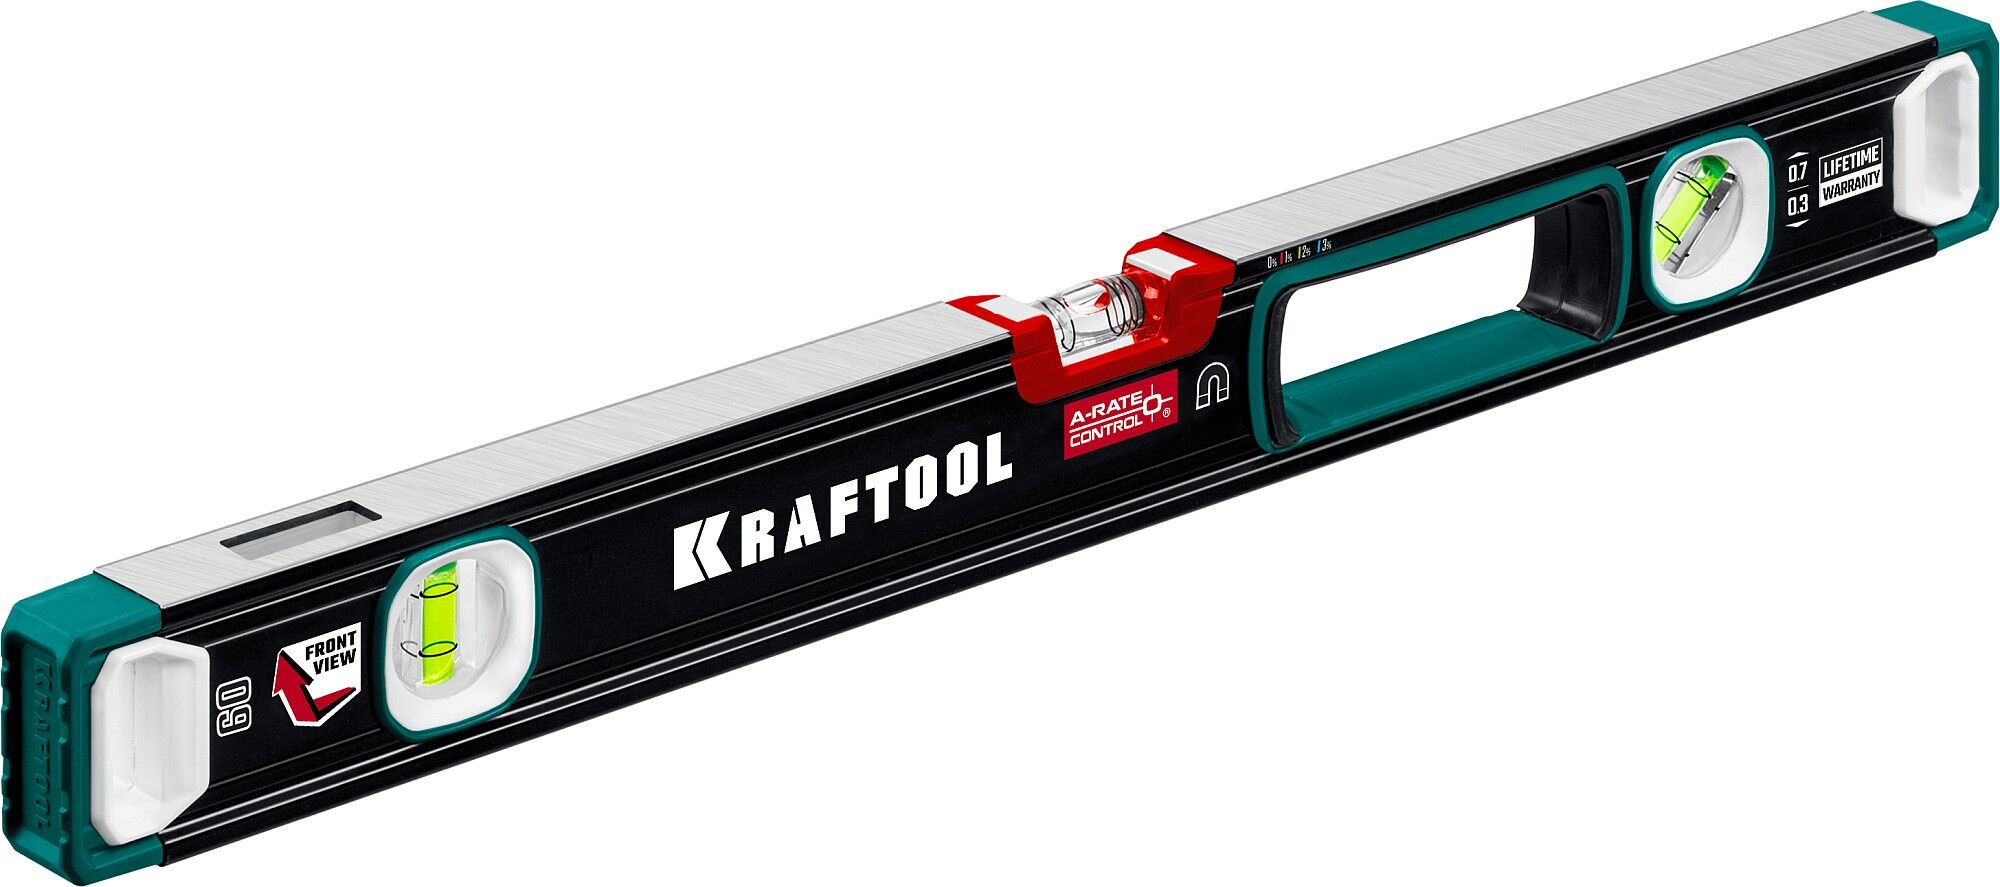 KRAFTOOL A-RATE CONTROL, 600 мм, точность 0.3 мм/м, с зеркальным глазком, сверхпрочный магнитный уровень (34988-60)